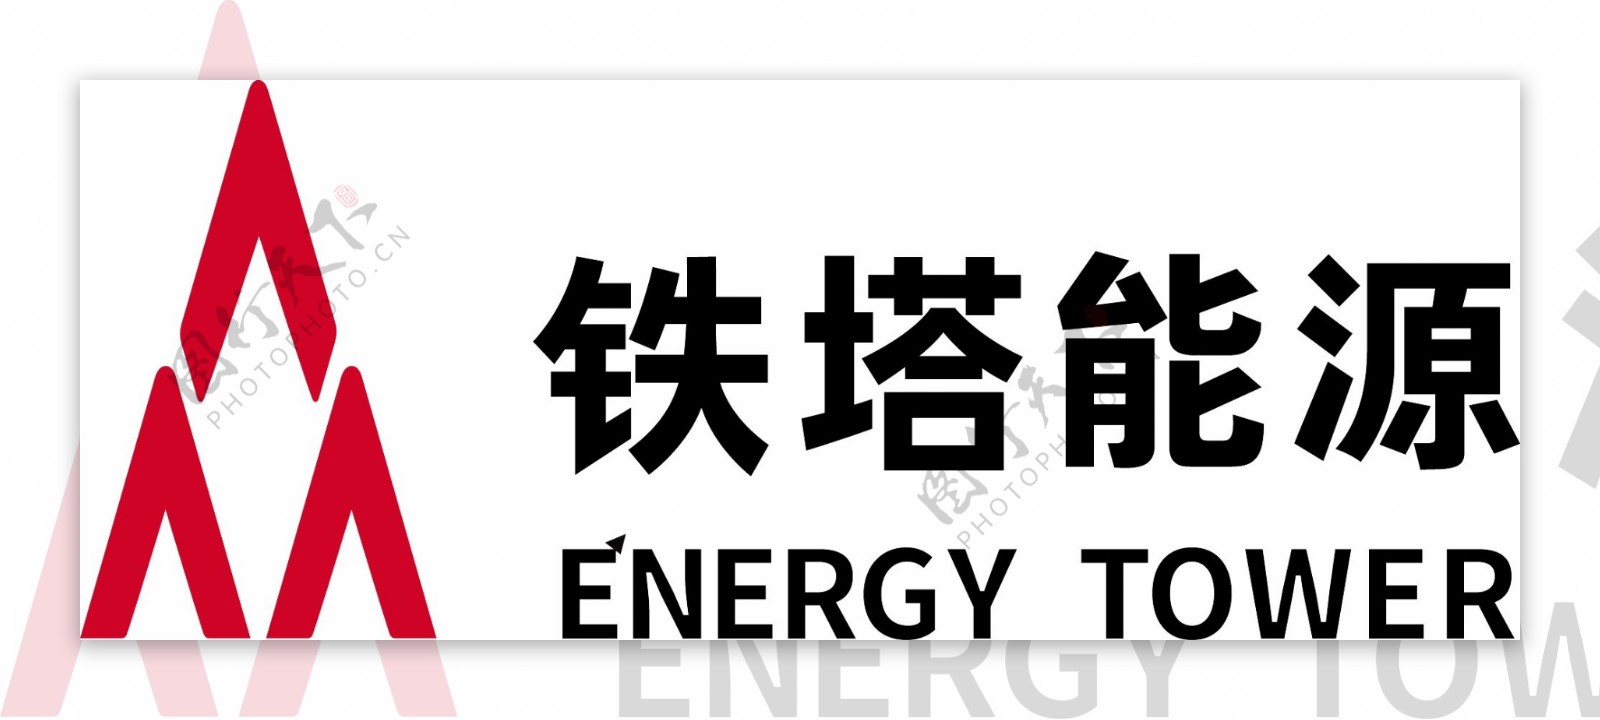 铁塔能源logo